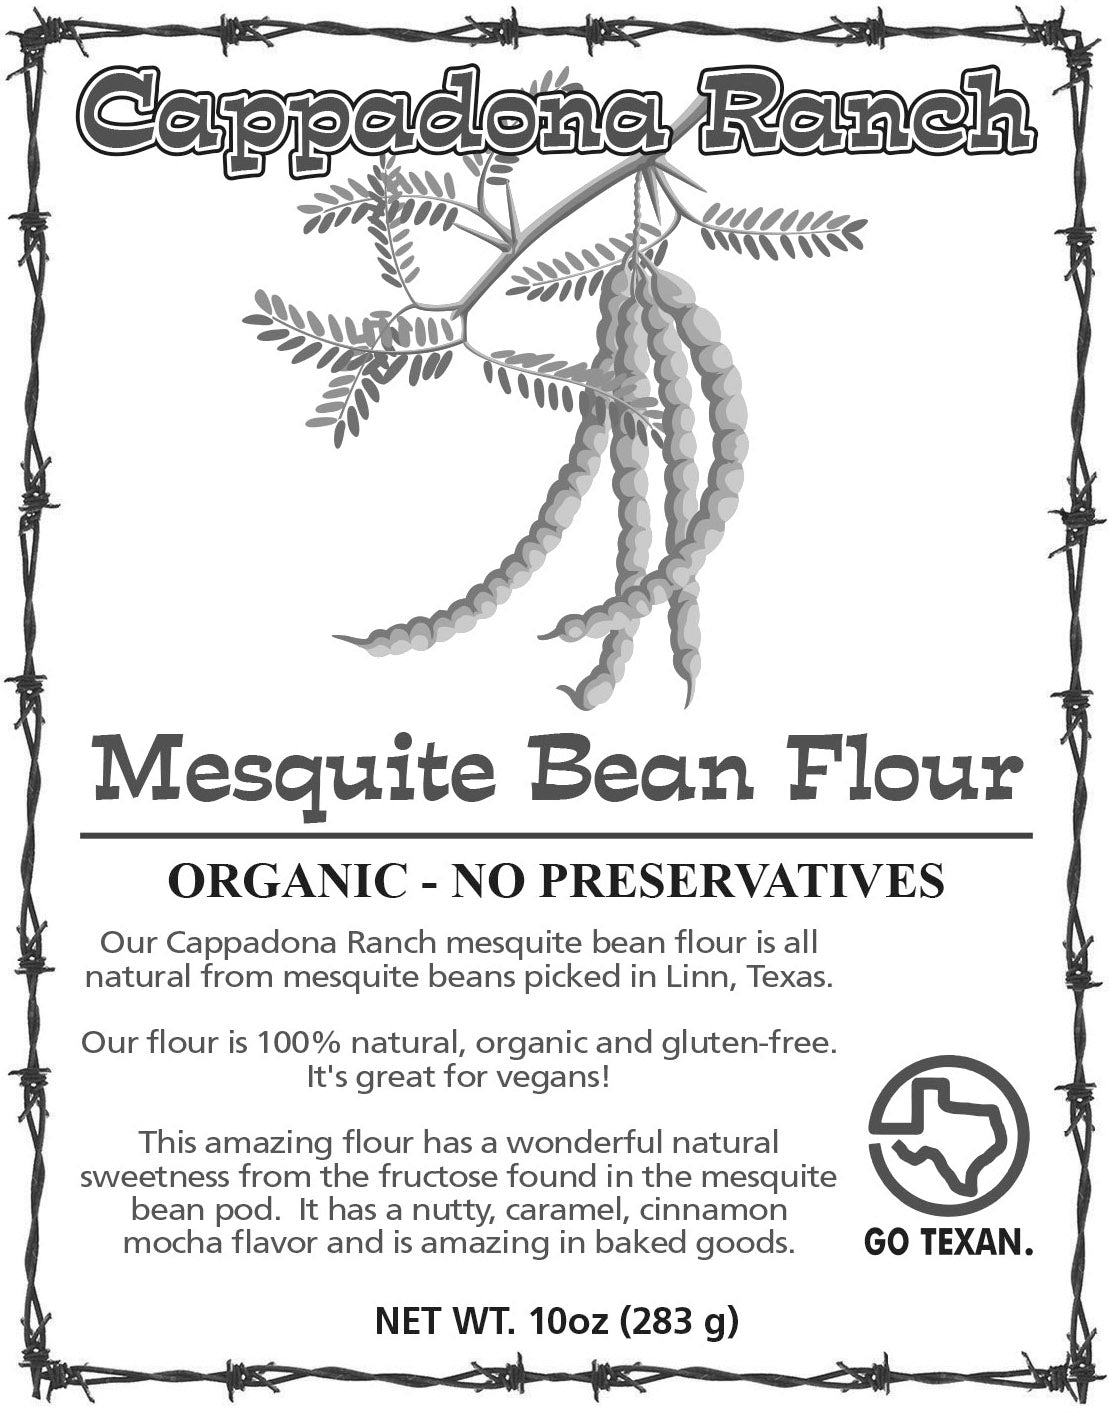 Cappadona Ranch Mesquite Bean Flour - Cappadona Ranch: Mesquite Jelly